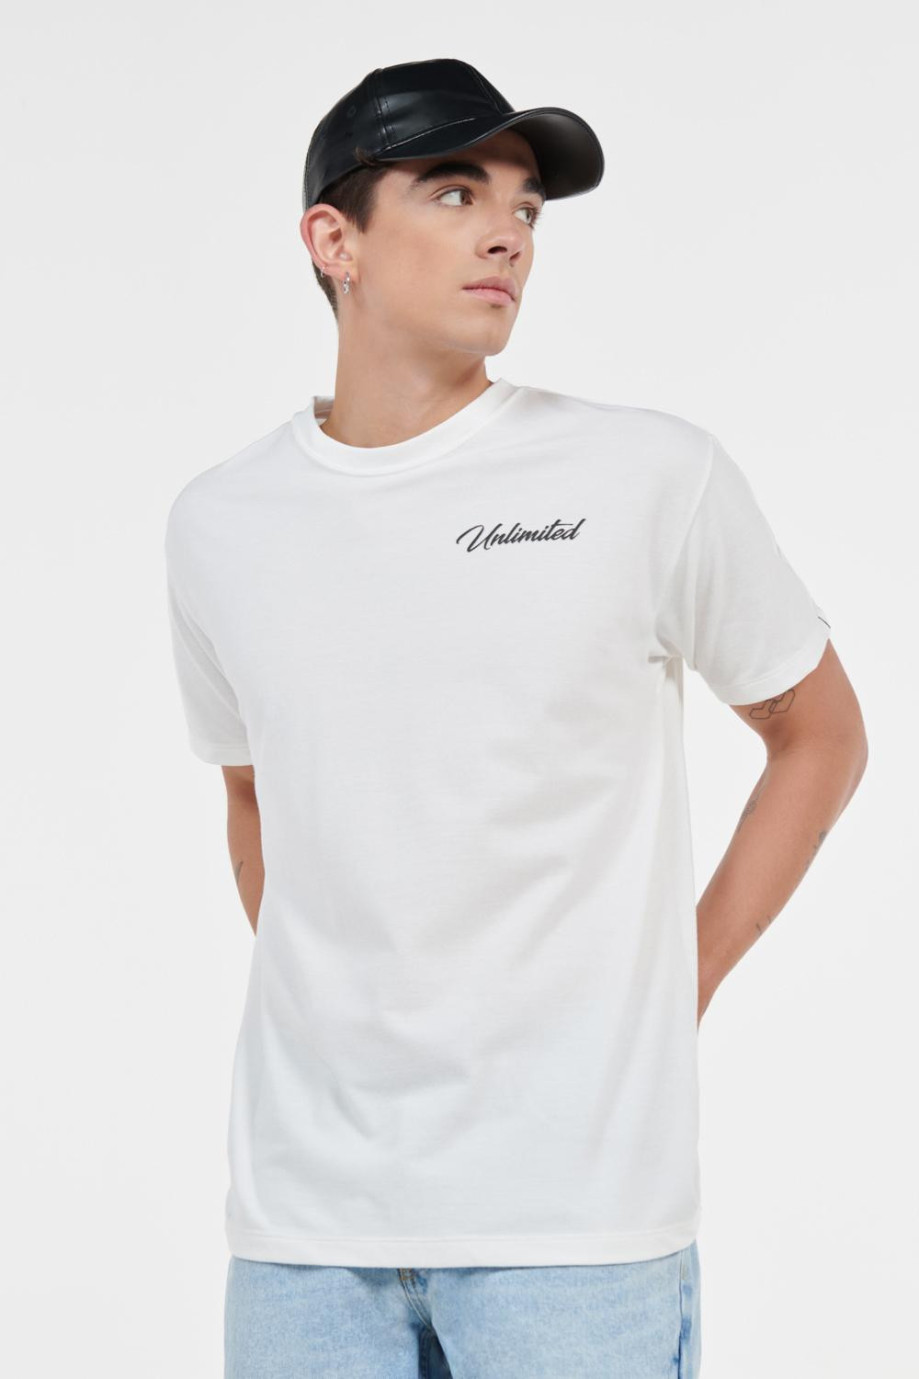 Camiseta unicolor con cuello redondo y texto estampado